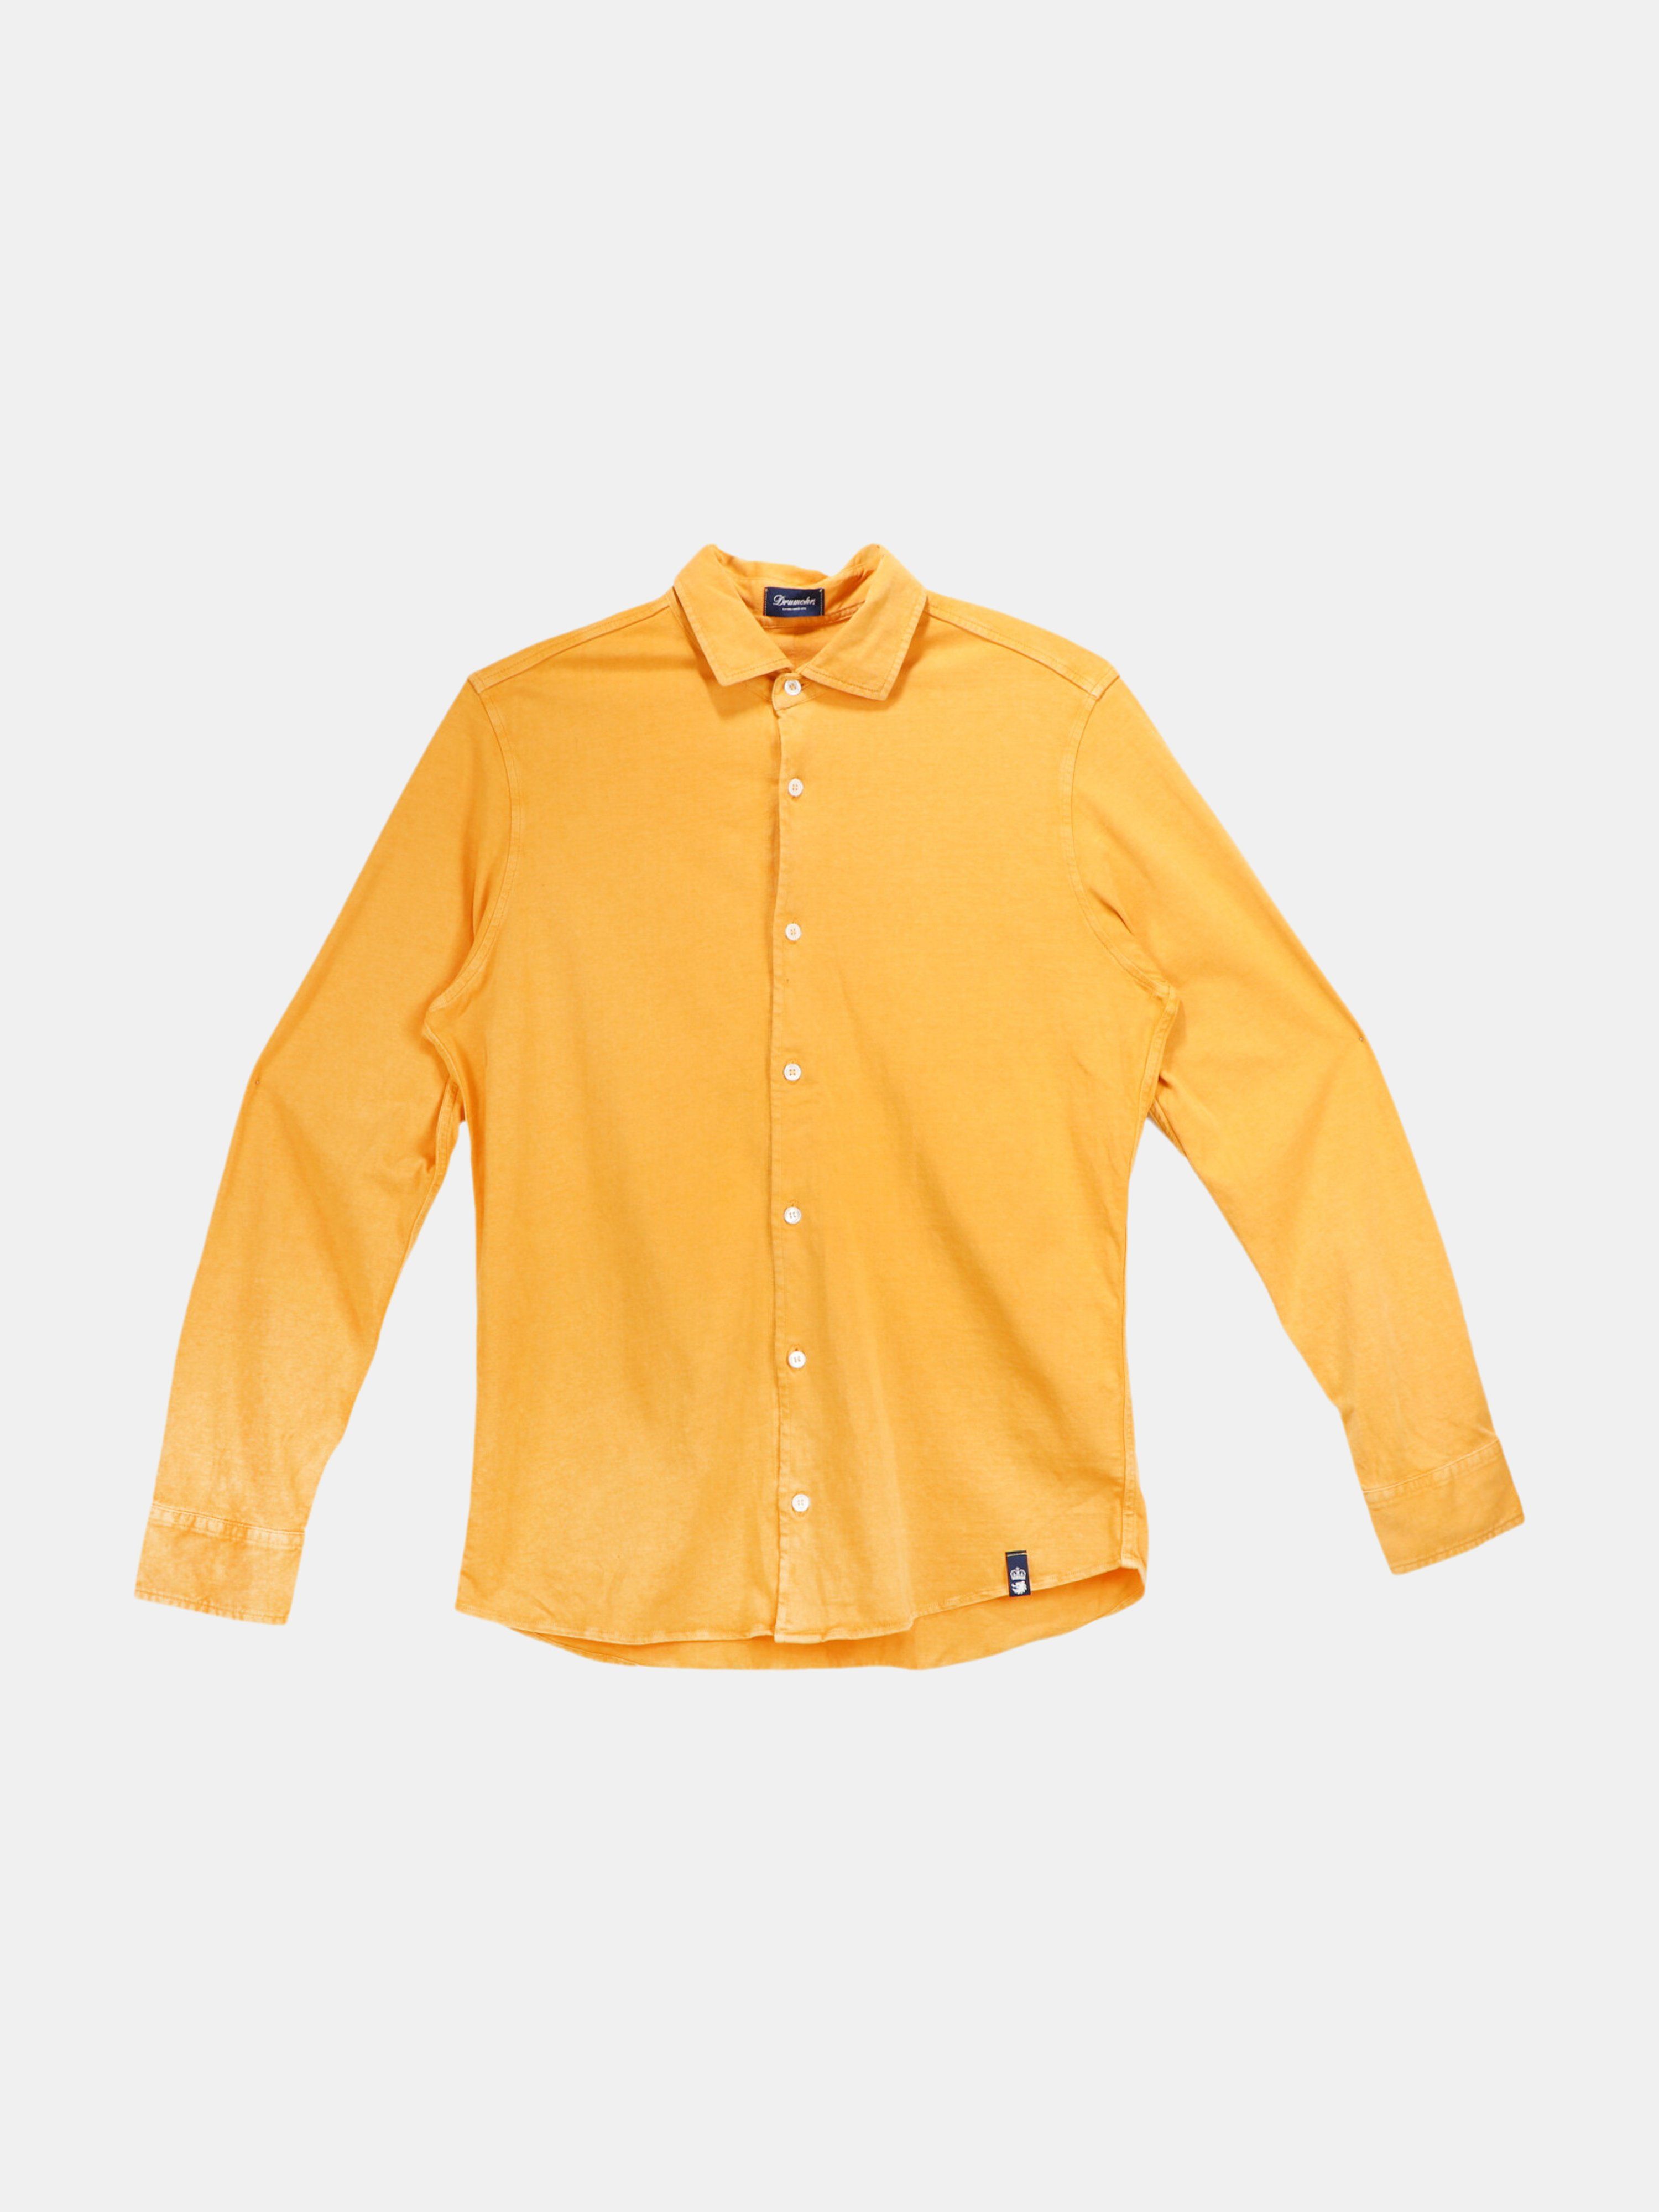 Drumohr Men\'s Yellow Button-Up Cotton Shirt Graphic T-Shirt - L - Also in: XL, M, S, XXL | Verishop